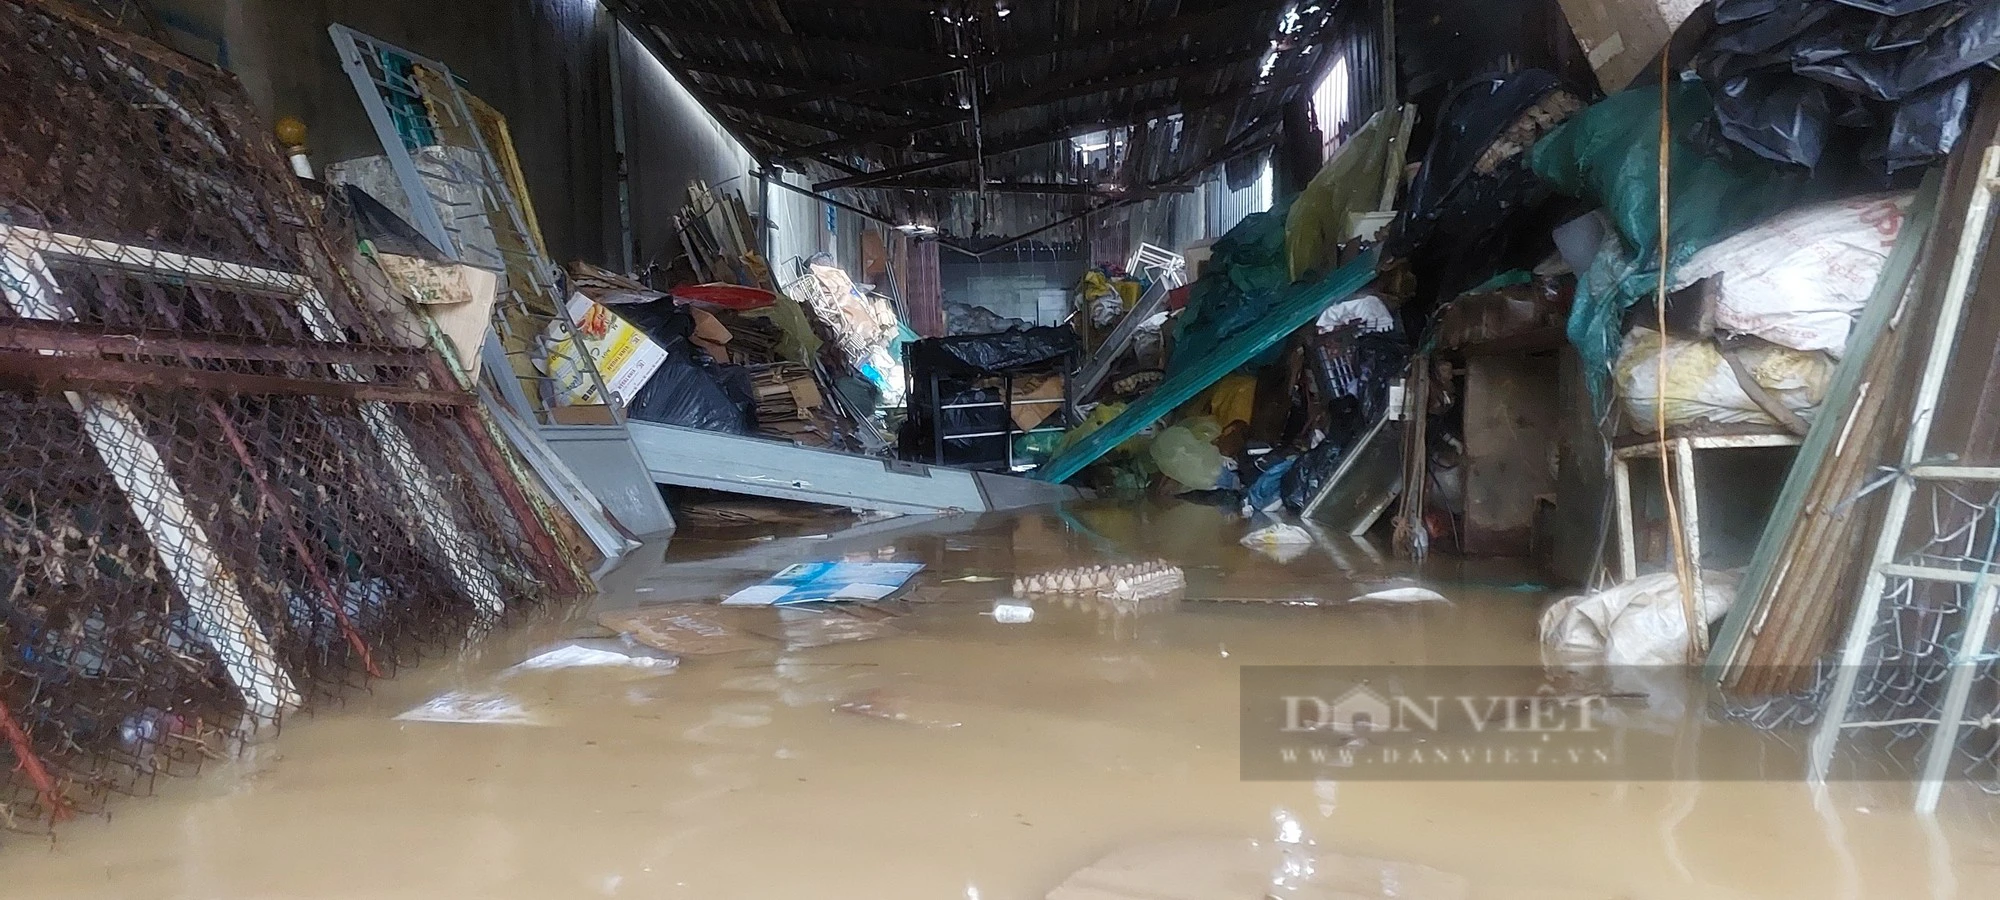 Đường ngập nước lênh láng, người dân chật vật dẫn xe chết máy sau mưa lớn tại Đà Nẵng - Ảnh 7.